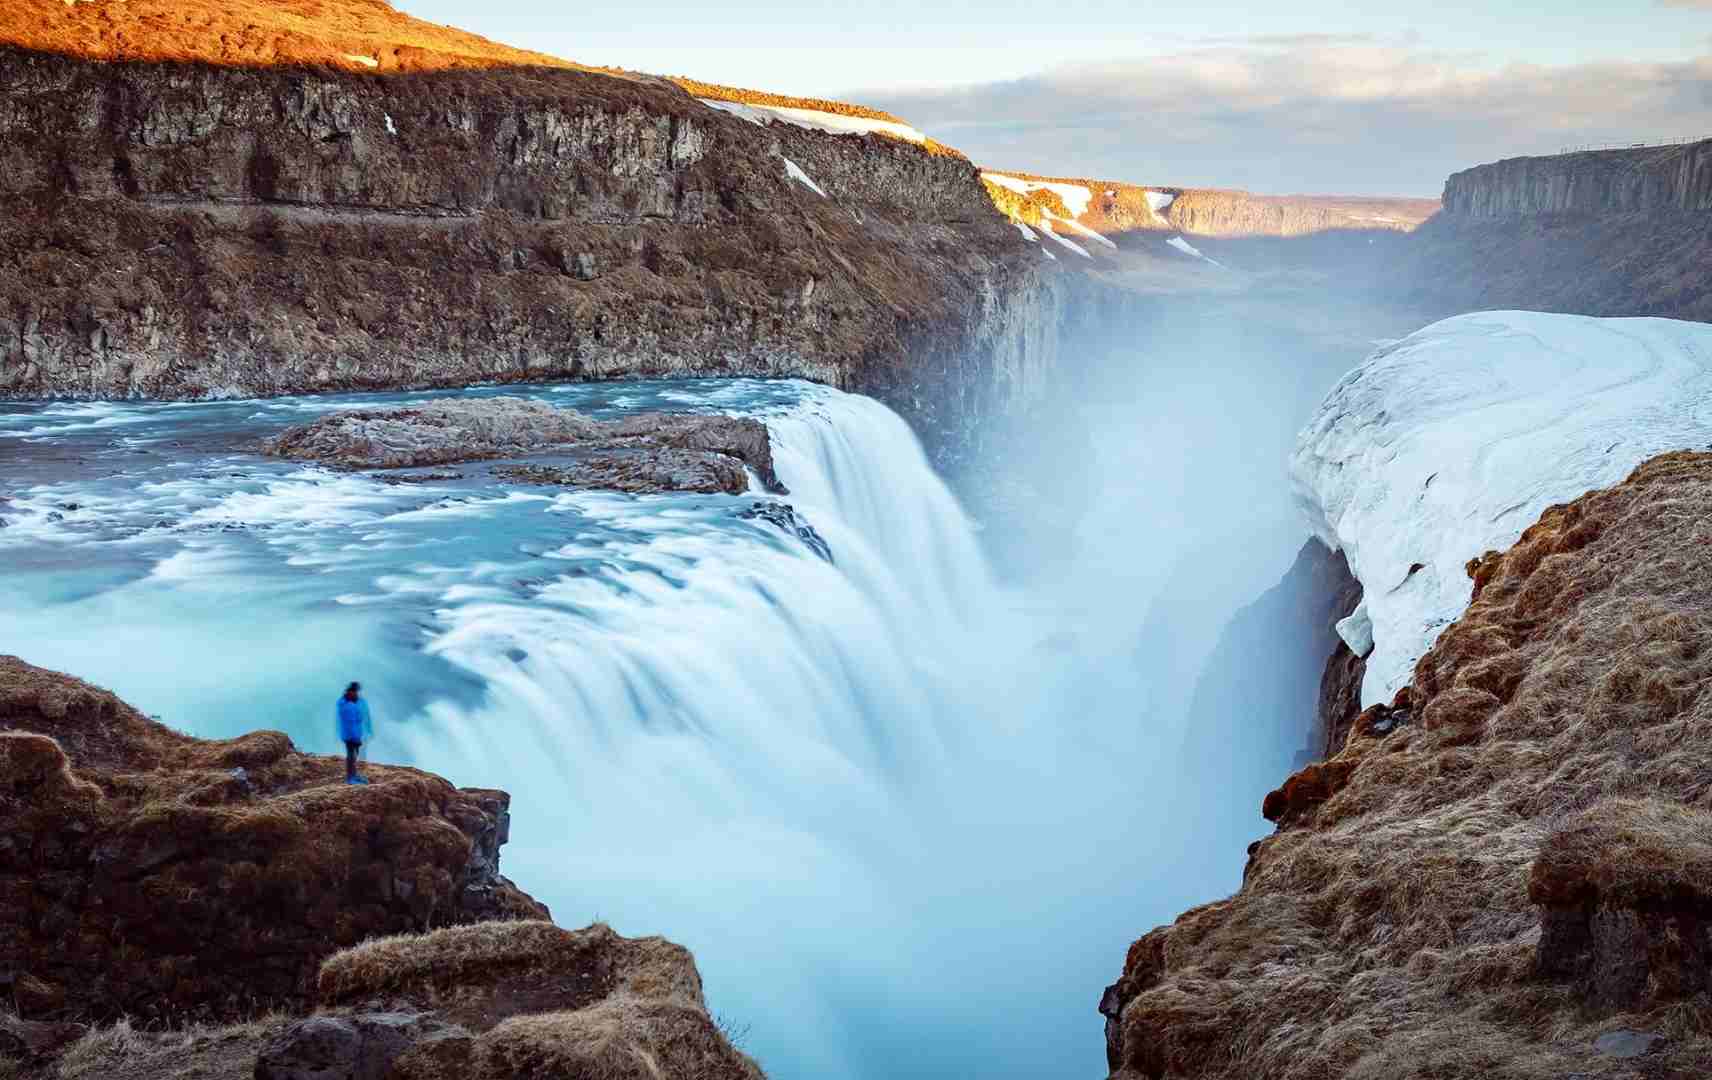 Island Wasserfälle